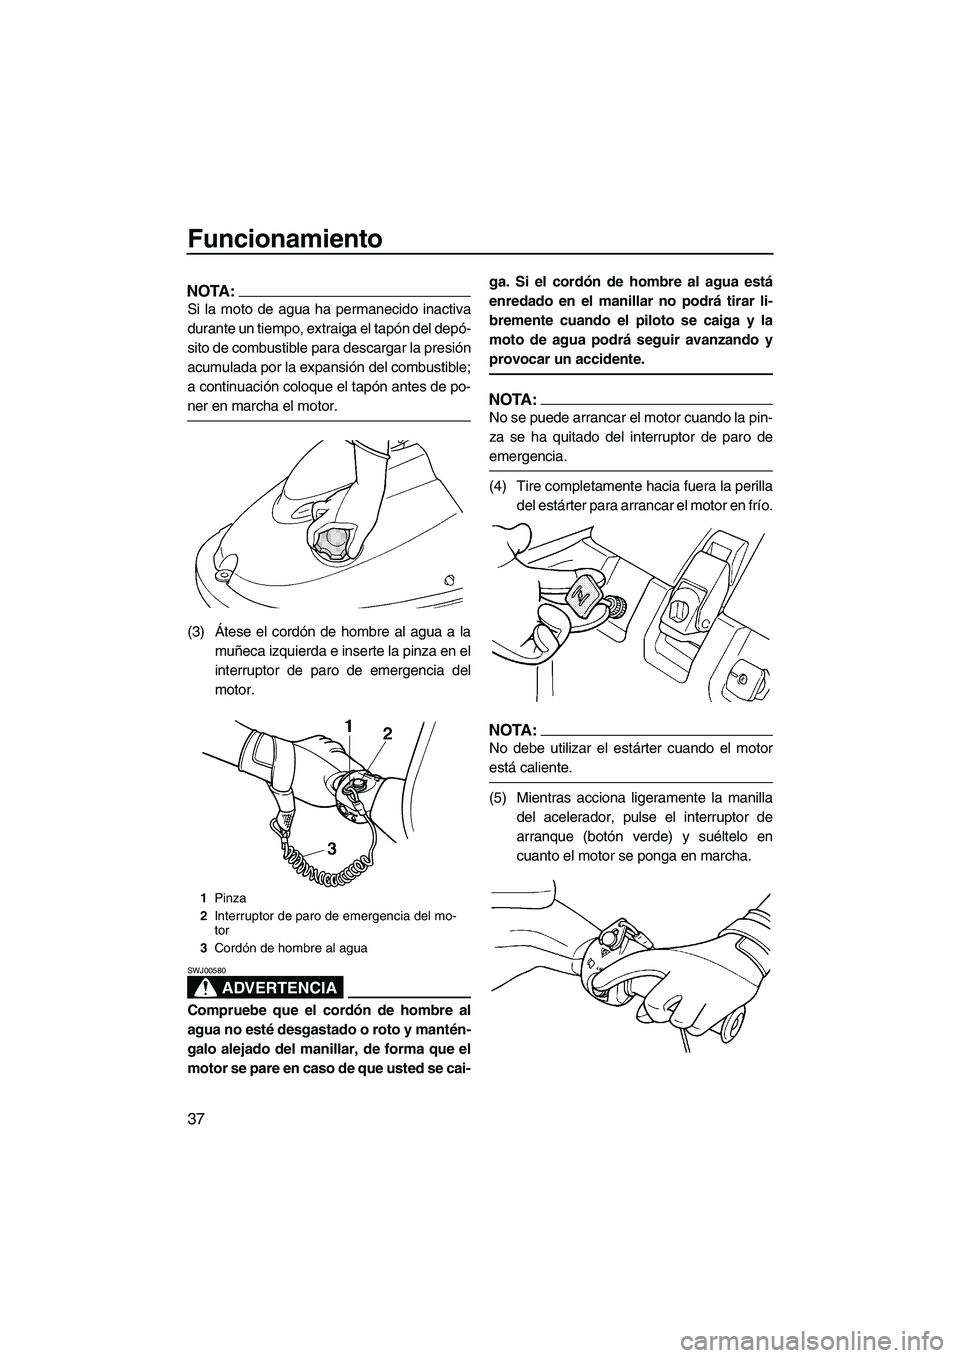 YAMAHA SUPERJET 2007  Manuale de Empleo (in Spanish) Funcionamiento
37
NOTA:
Si la moto de agua ha permanecido inactiva
durante un tiempo, extraiga el tapón del depó-
sito de combustible para descargar la presión
acumulada por la expansión del combu